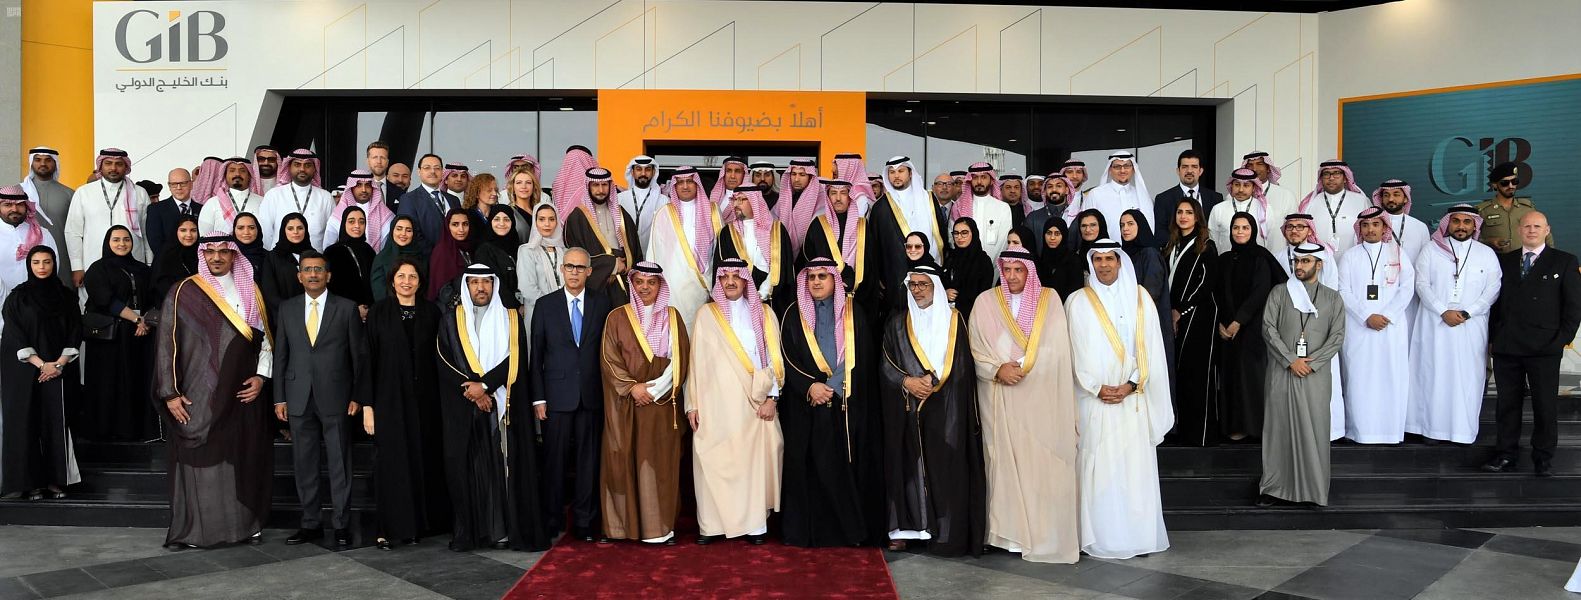 الأمير سعود بن نايف يفتتح مركز عمليات بنك الخليج الدولي بالخبر